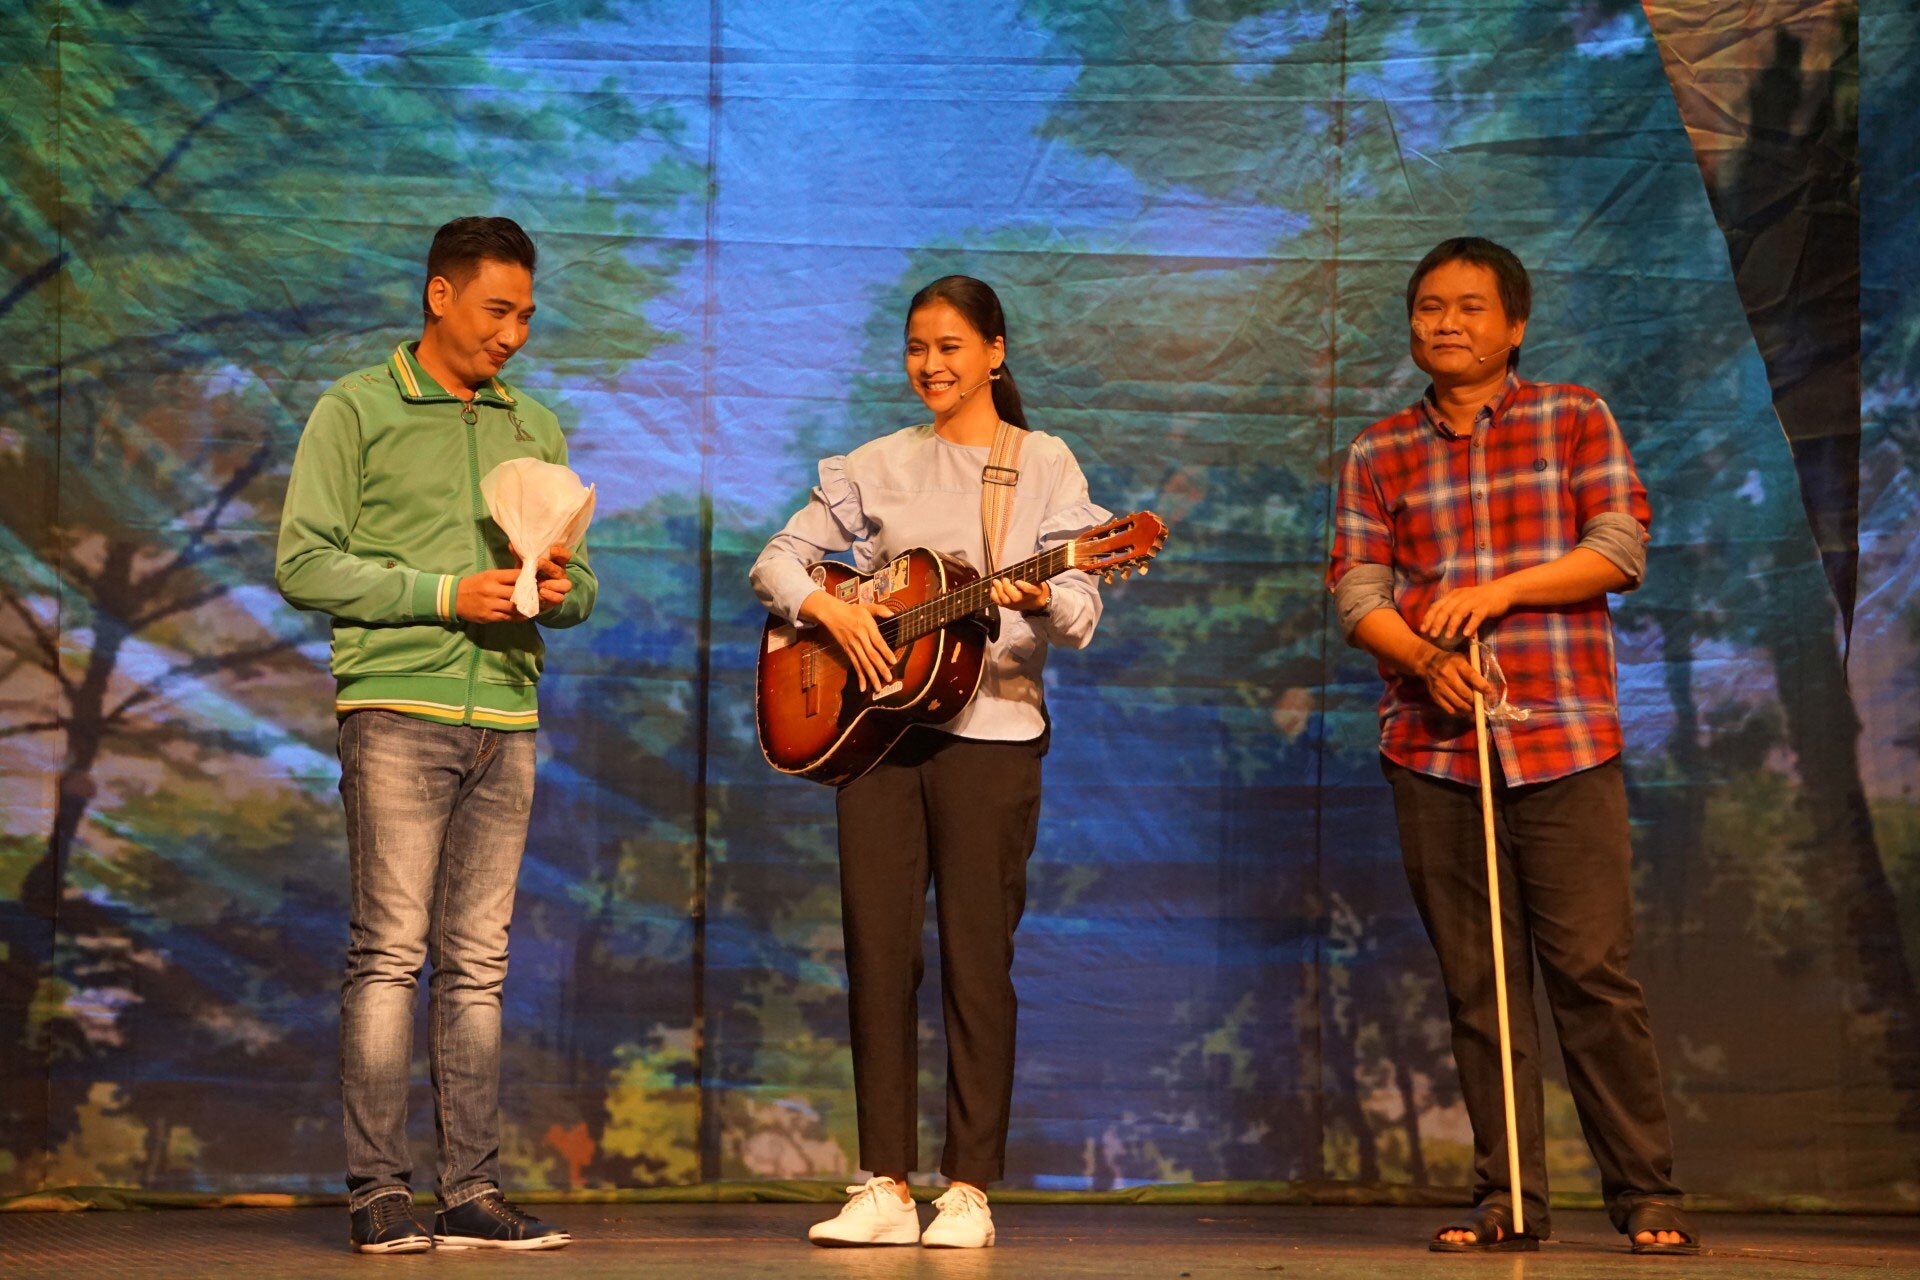 Một cảnh trong vở kịch “Thành phố tình yêu” của tác giả Vương Huyền Cơ, do Nhà hát Kịch TP HCM biểu diễn